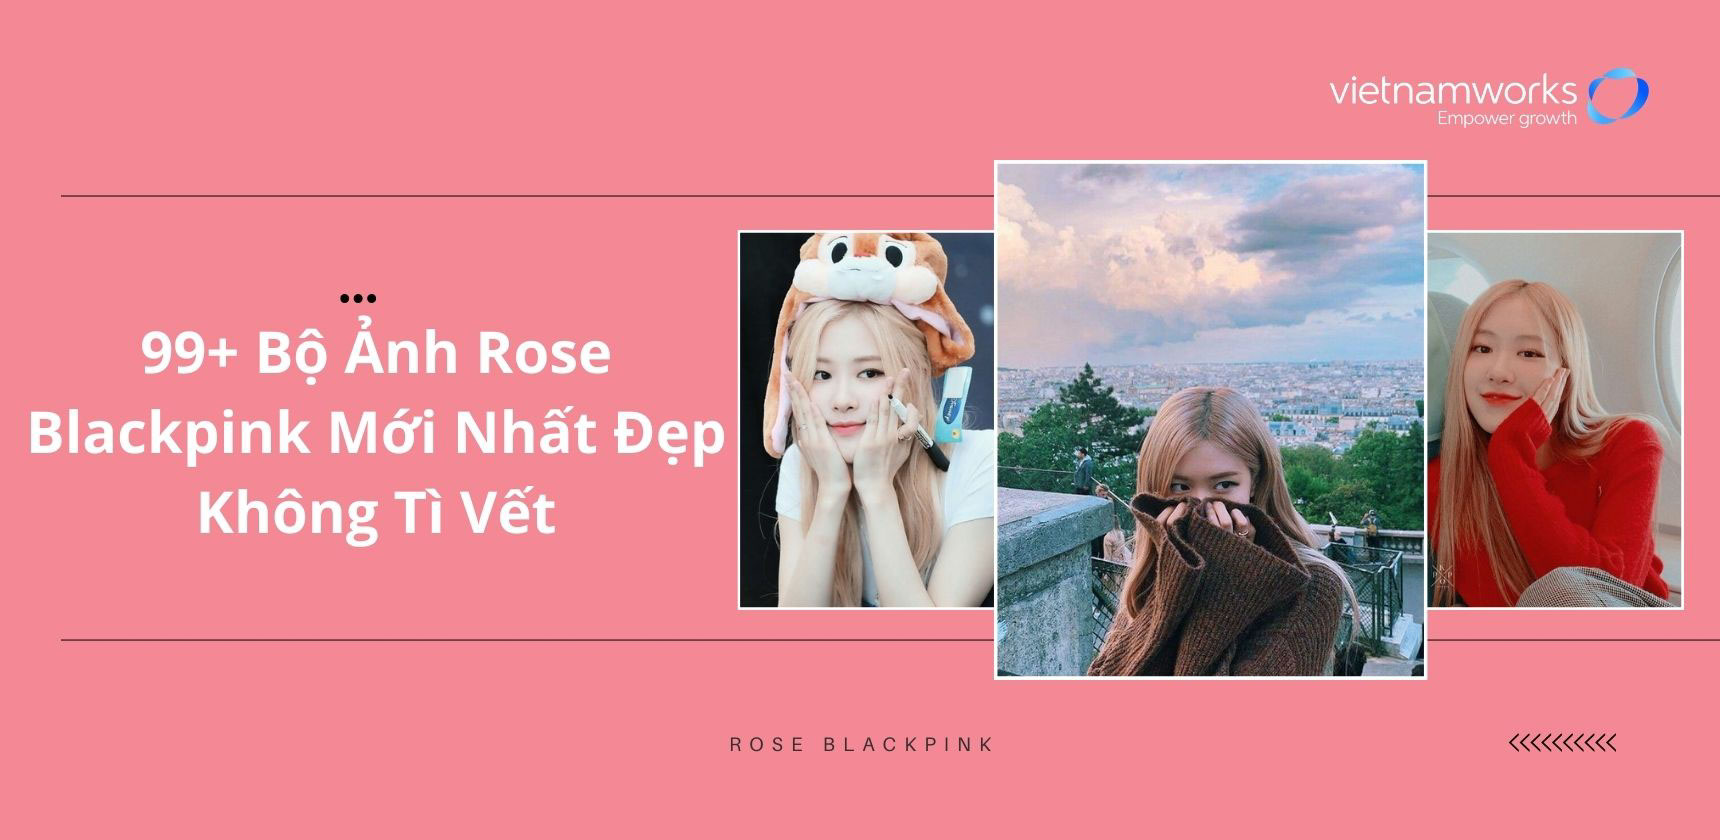 Hình Ảnh Rosé Blackpink Đẹp Mới Nhất Làm Hình Nền Ấn Tượng - Top 10 Hà Nội